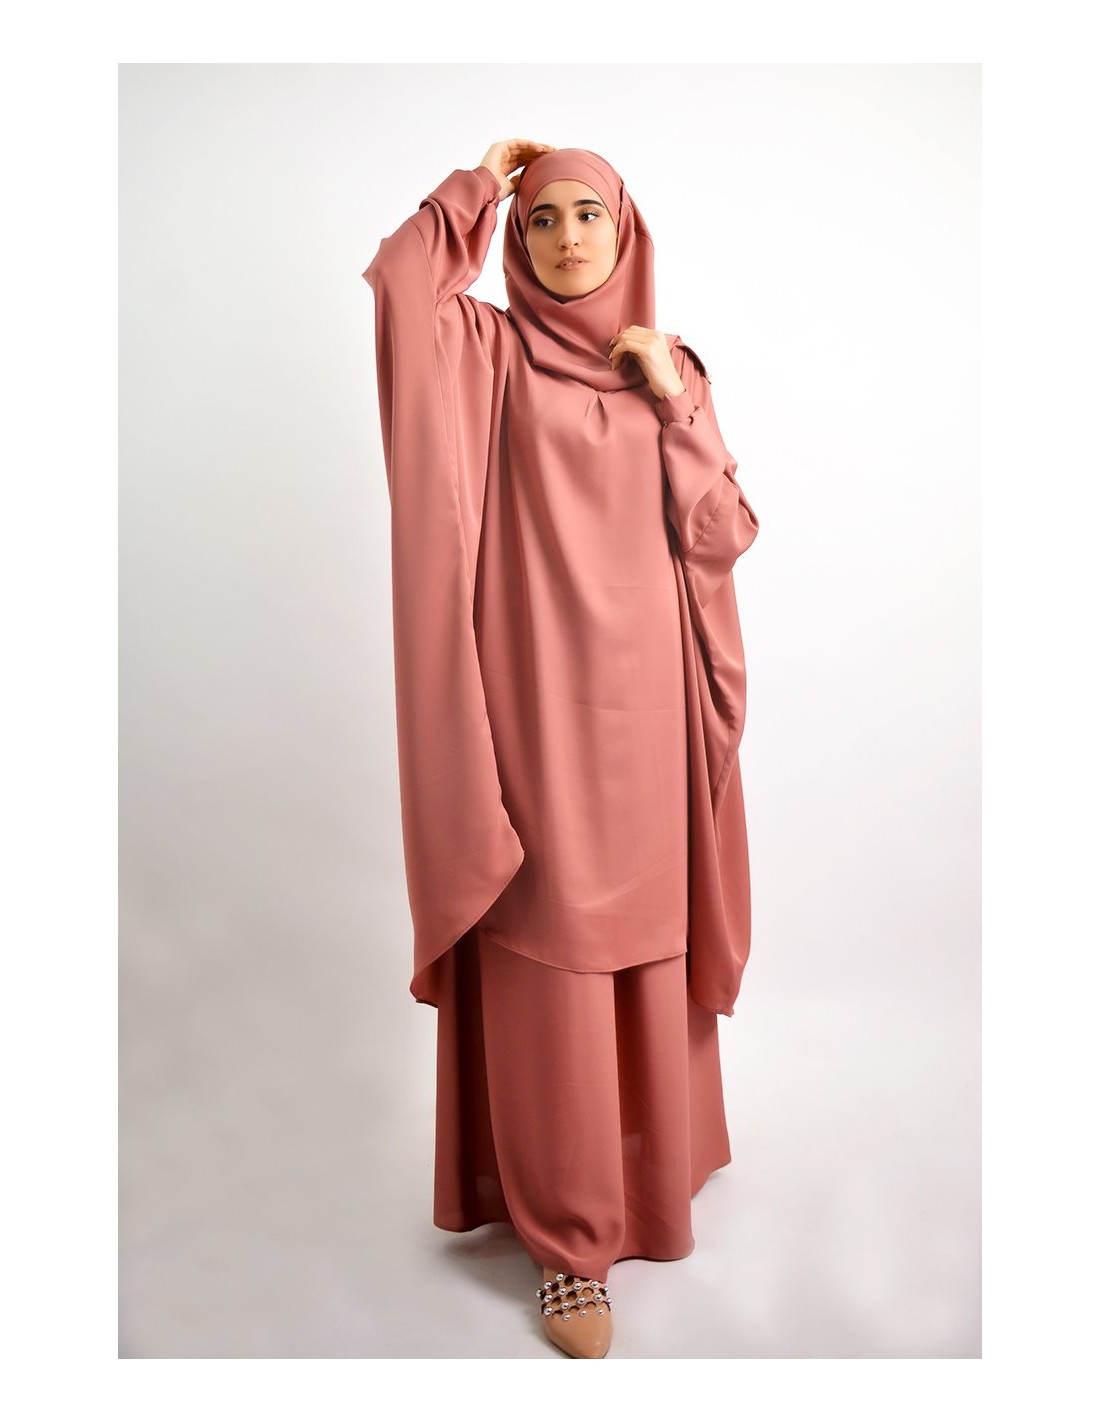 Conjunto de túnica con hiyab + falda integrada